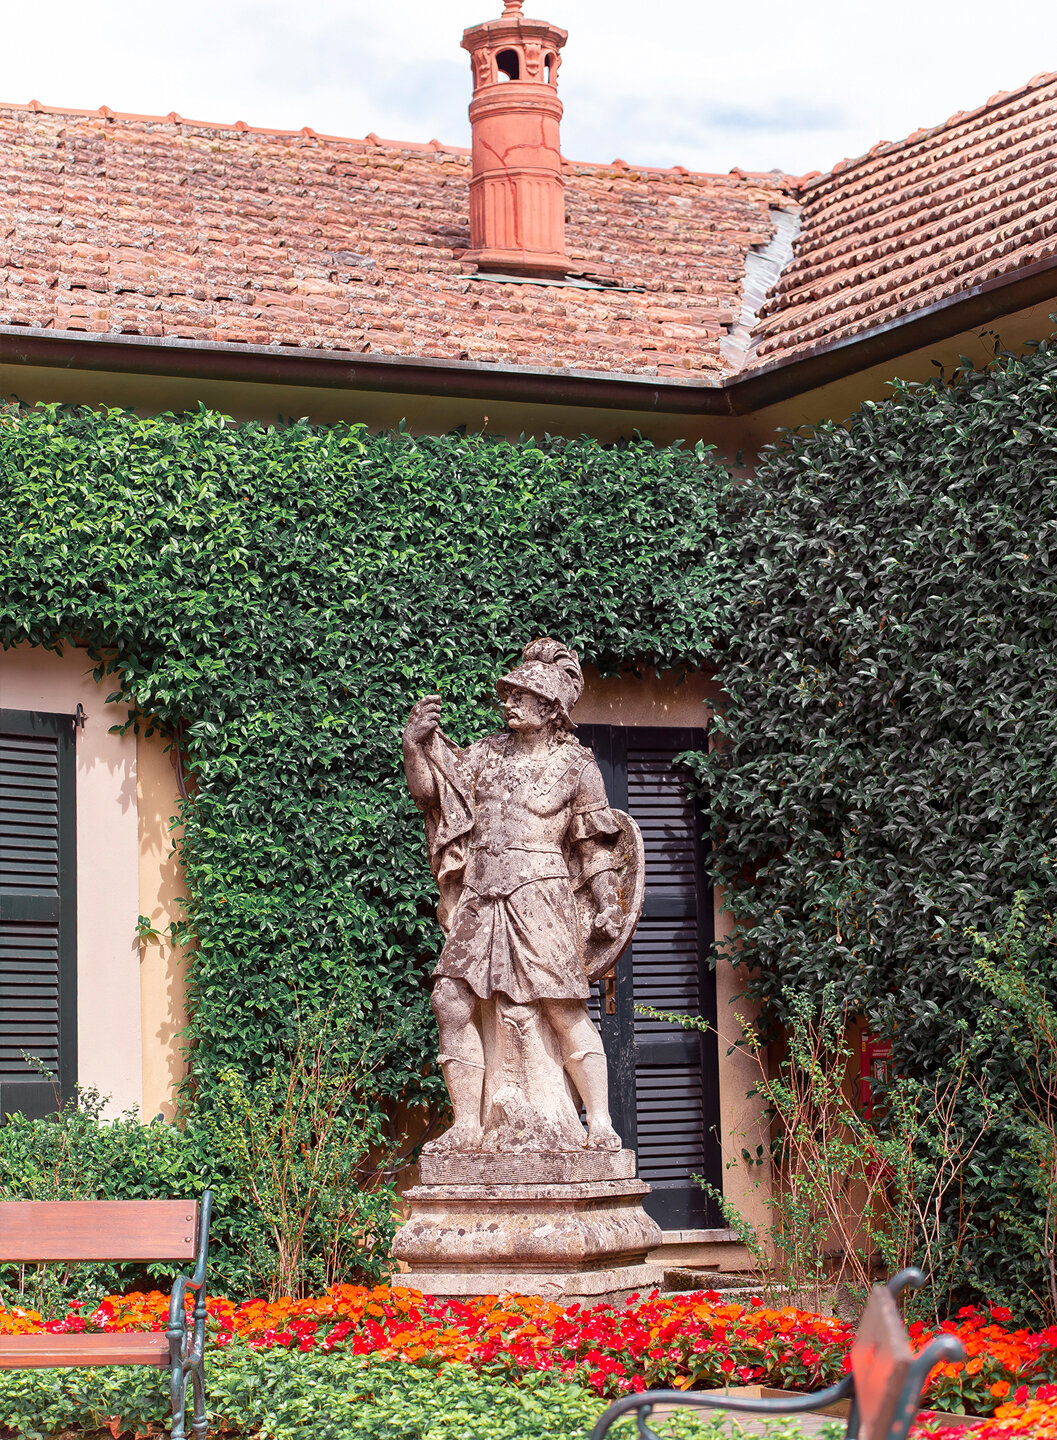 A sculpture in Villa del Balbianello